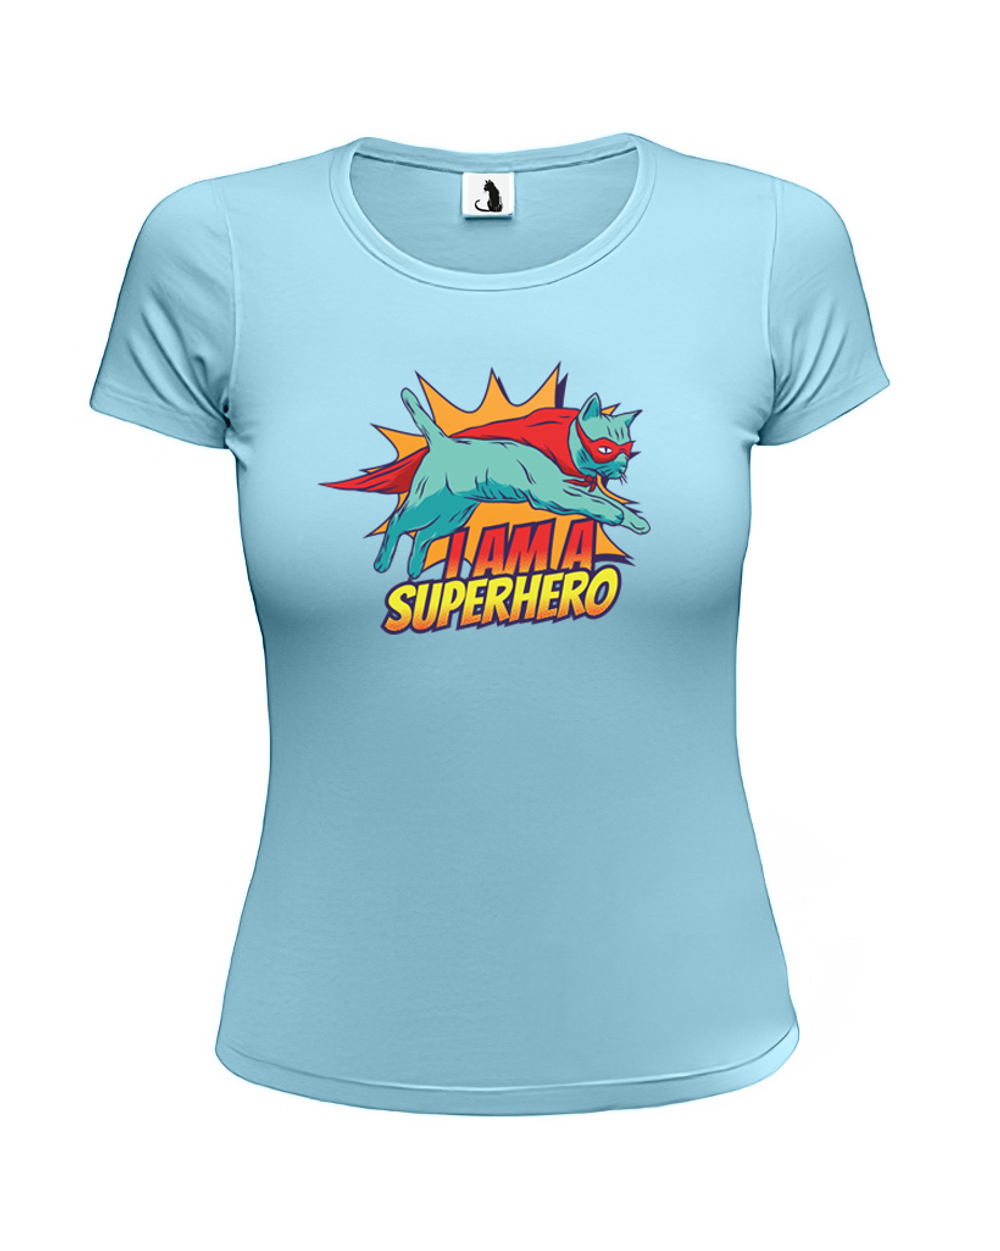 Футболка I am a superhero женская приталенная голубая